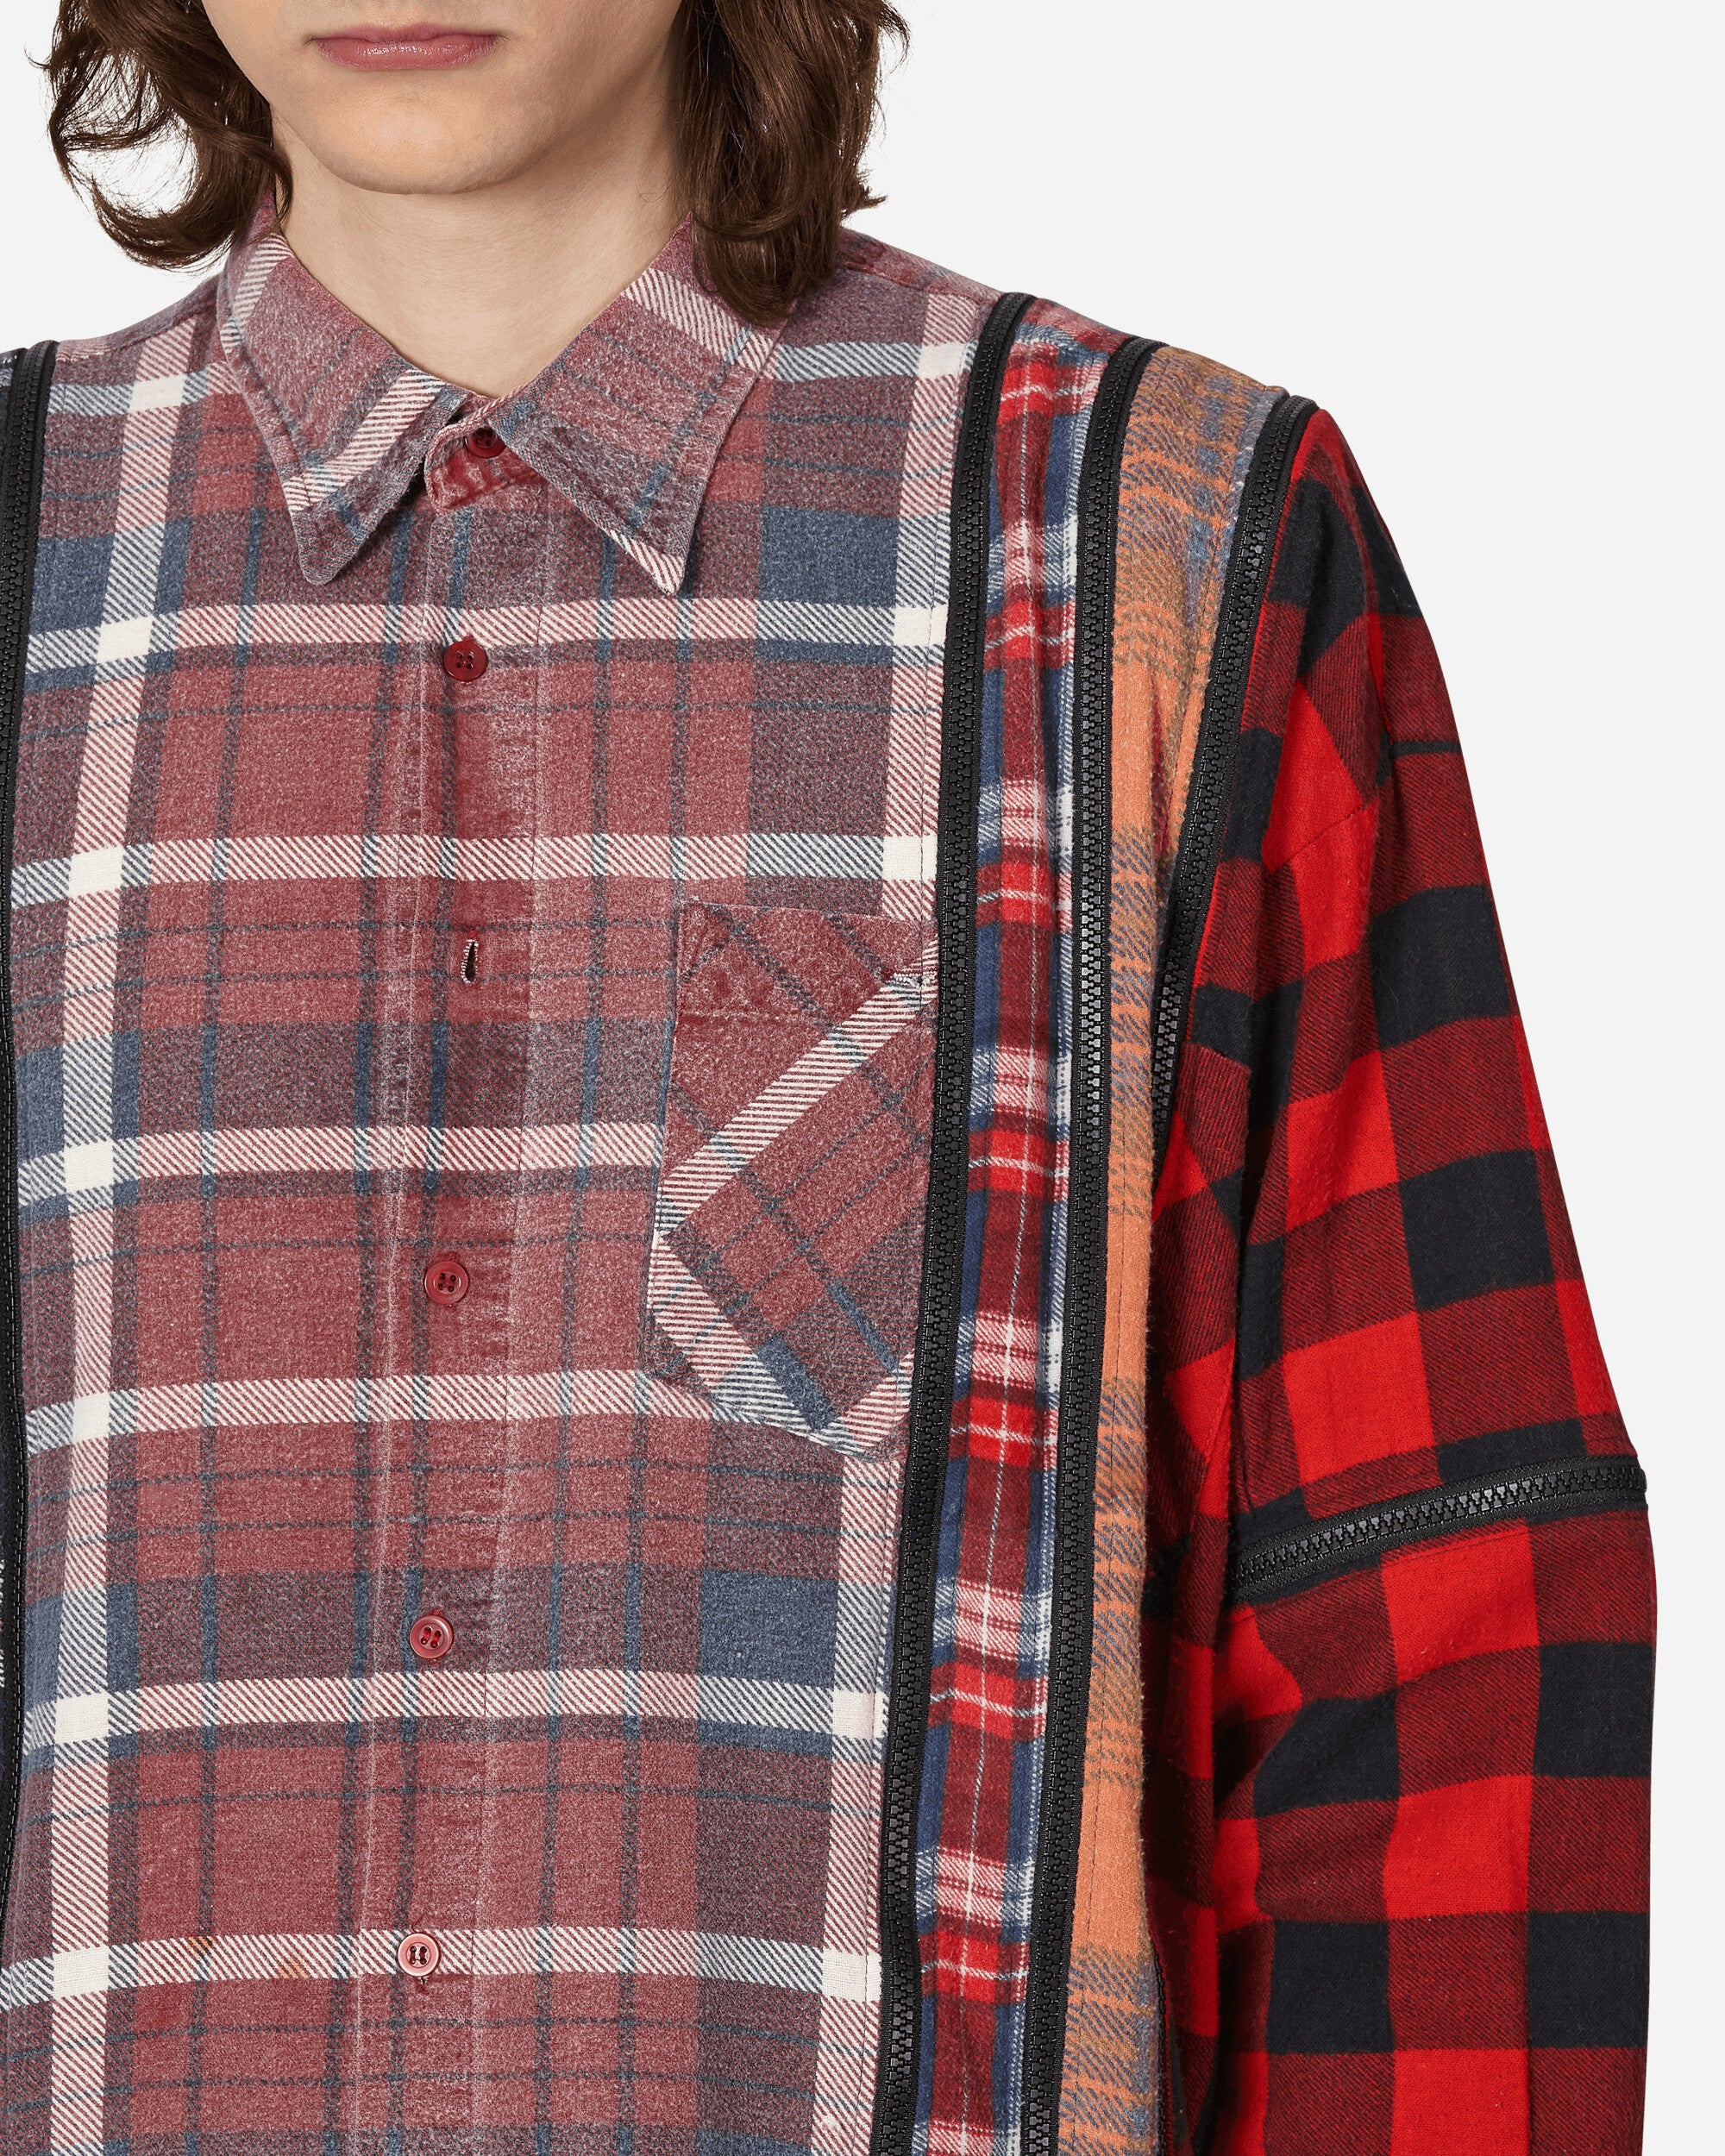 Needles Flannel Shirt - 7 Cuts Zipped Wide Shirt Assorted Shirts Longsleeve Shirt MR343 1014